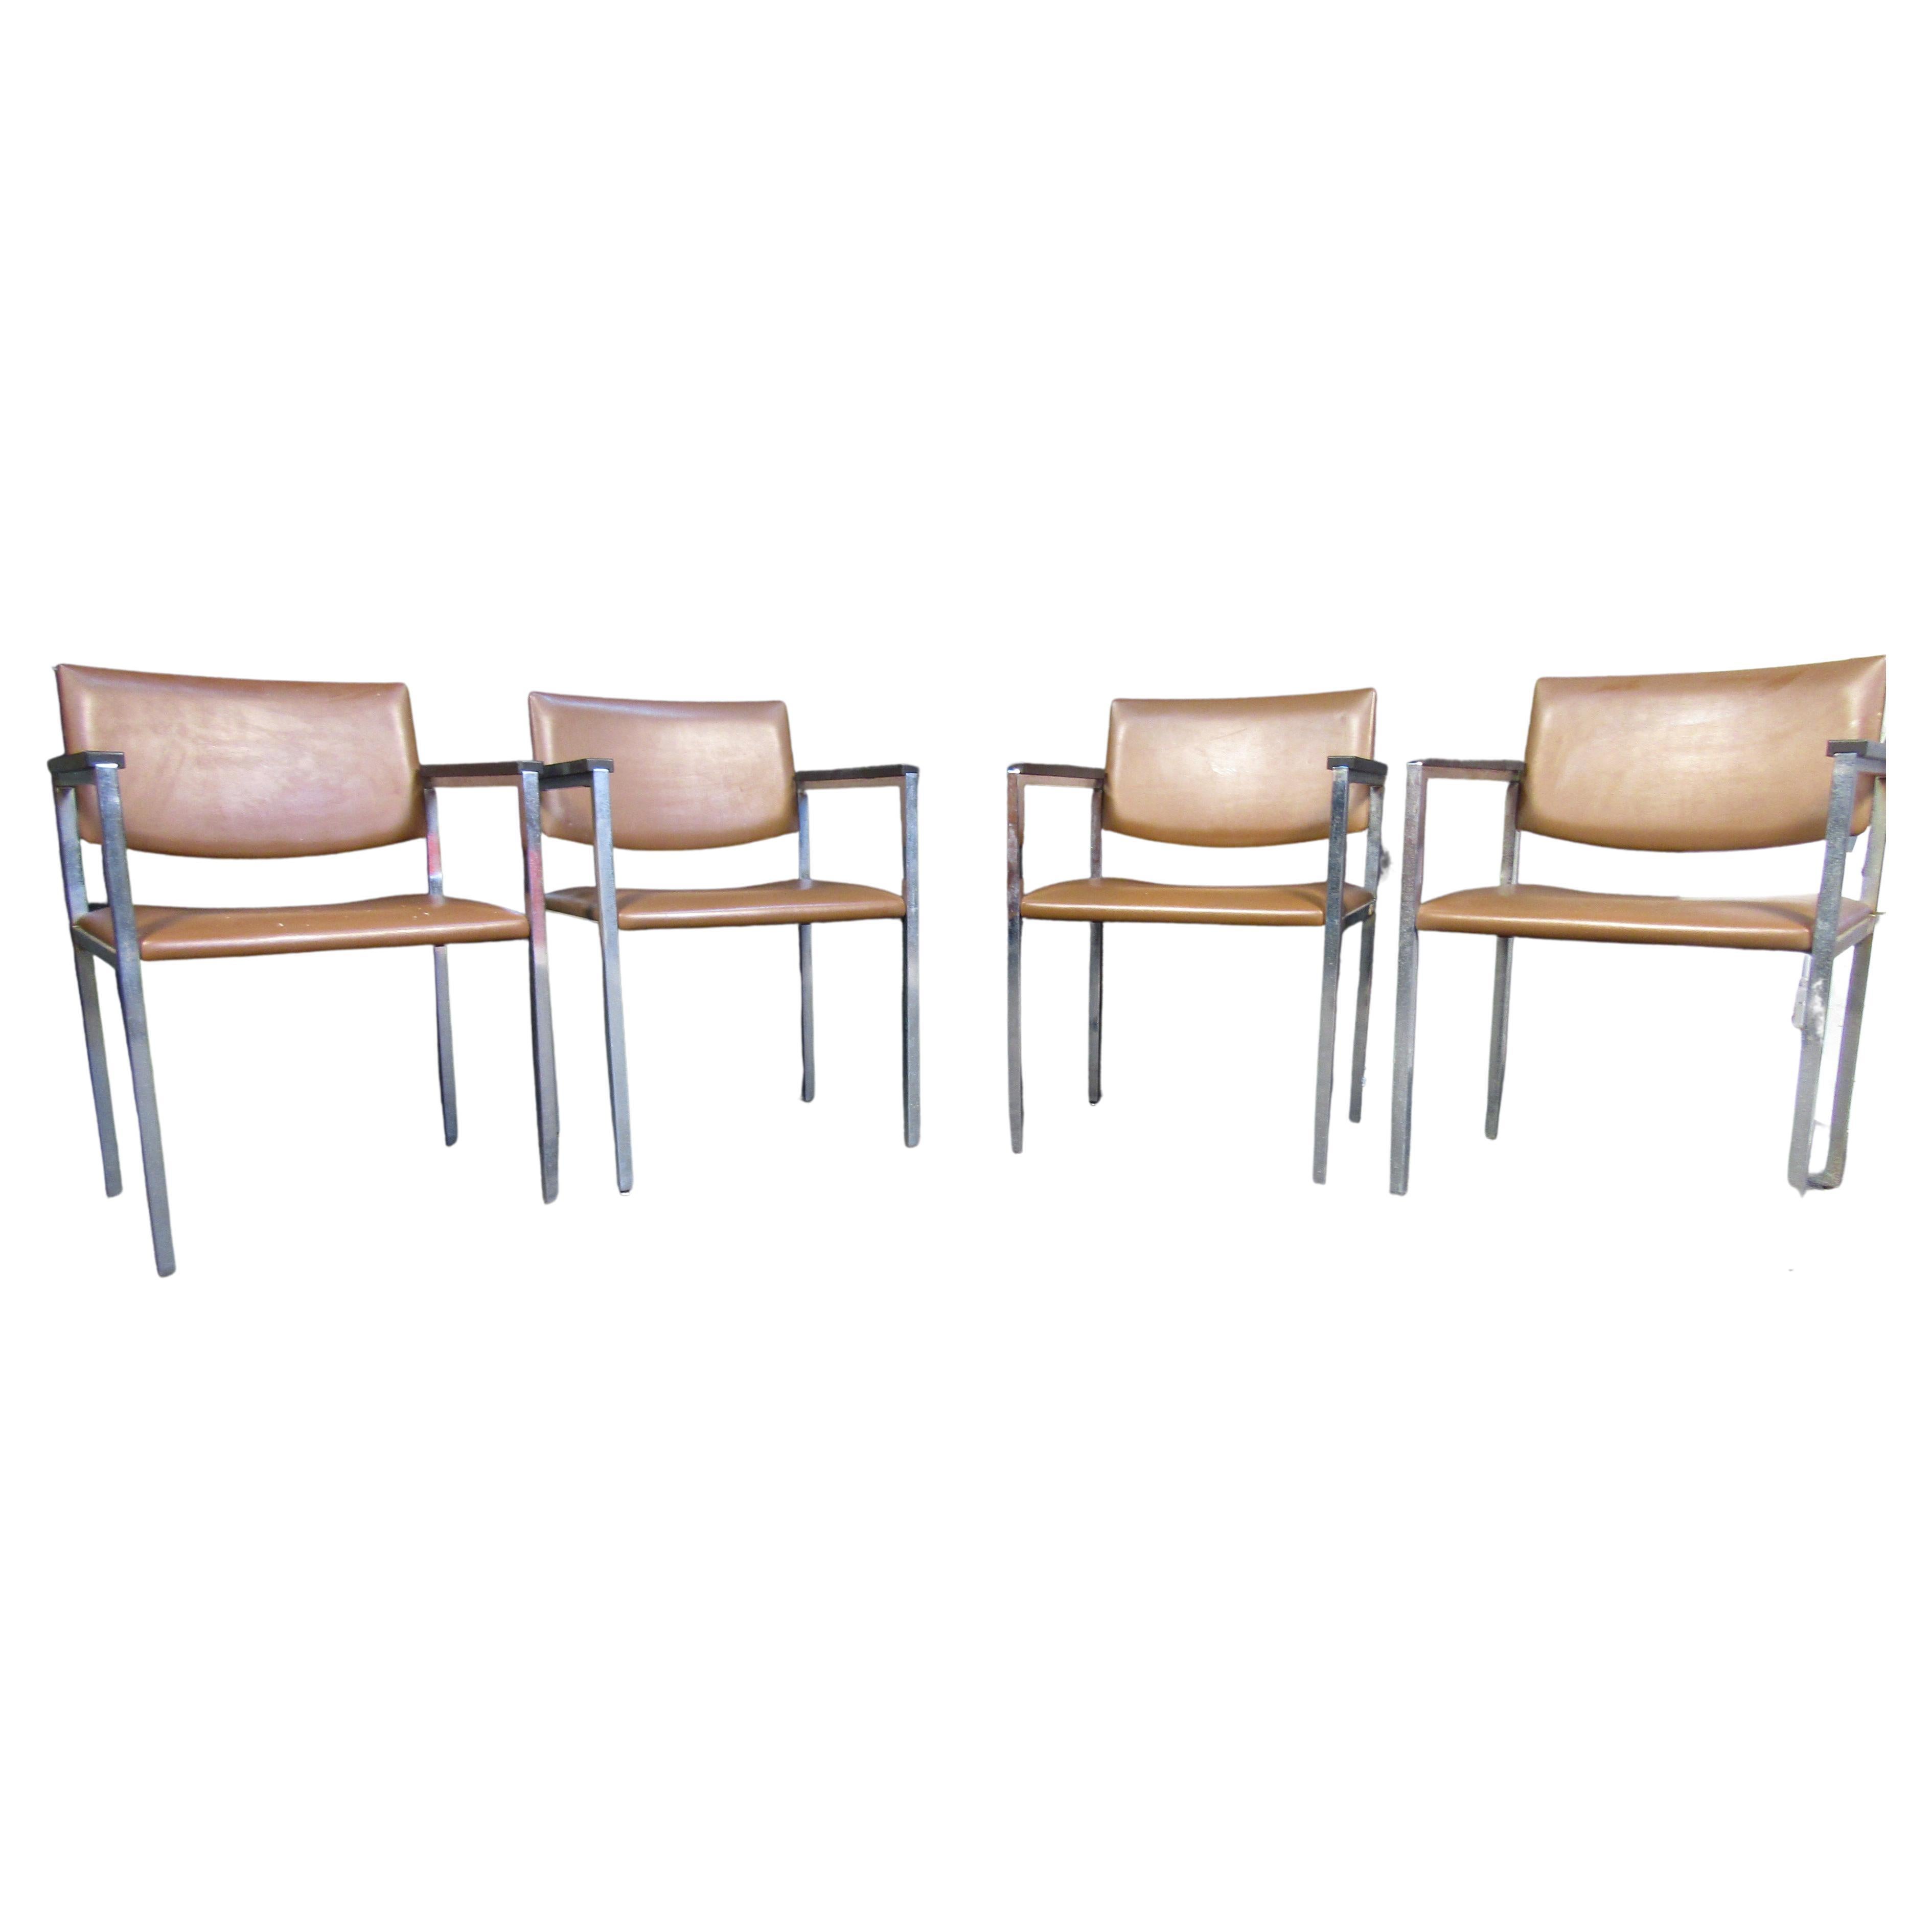 Mit ihrem minimalistischen Design aus einem verchromten Gestell und braunen Vinylsitzen lassen sich diese Vintage-Stühle von Steelcase vielseitig in verschiedenen Umgebungen einsetzen. Hergestellt in den USA. Bitte bestätigen Sie den Standort des